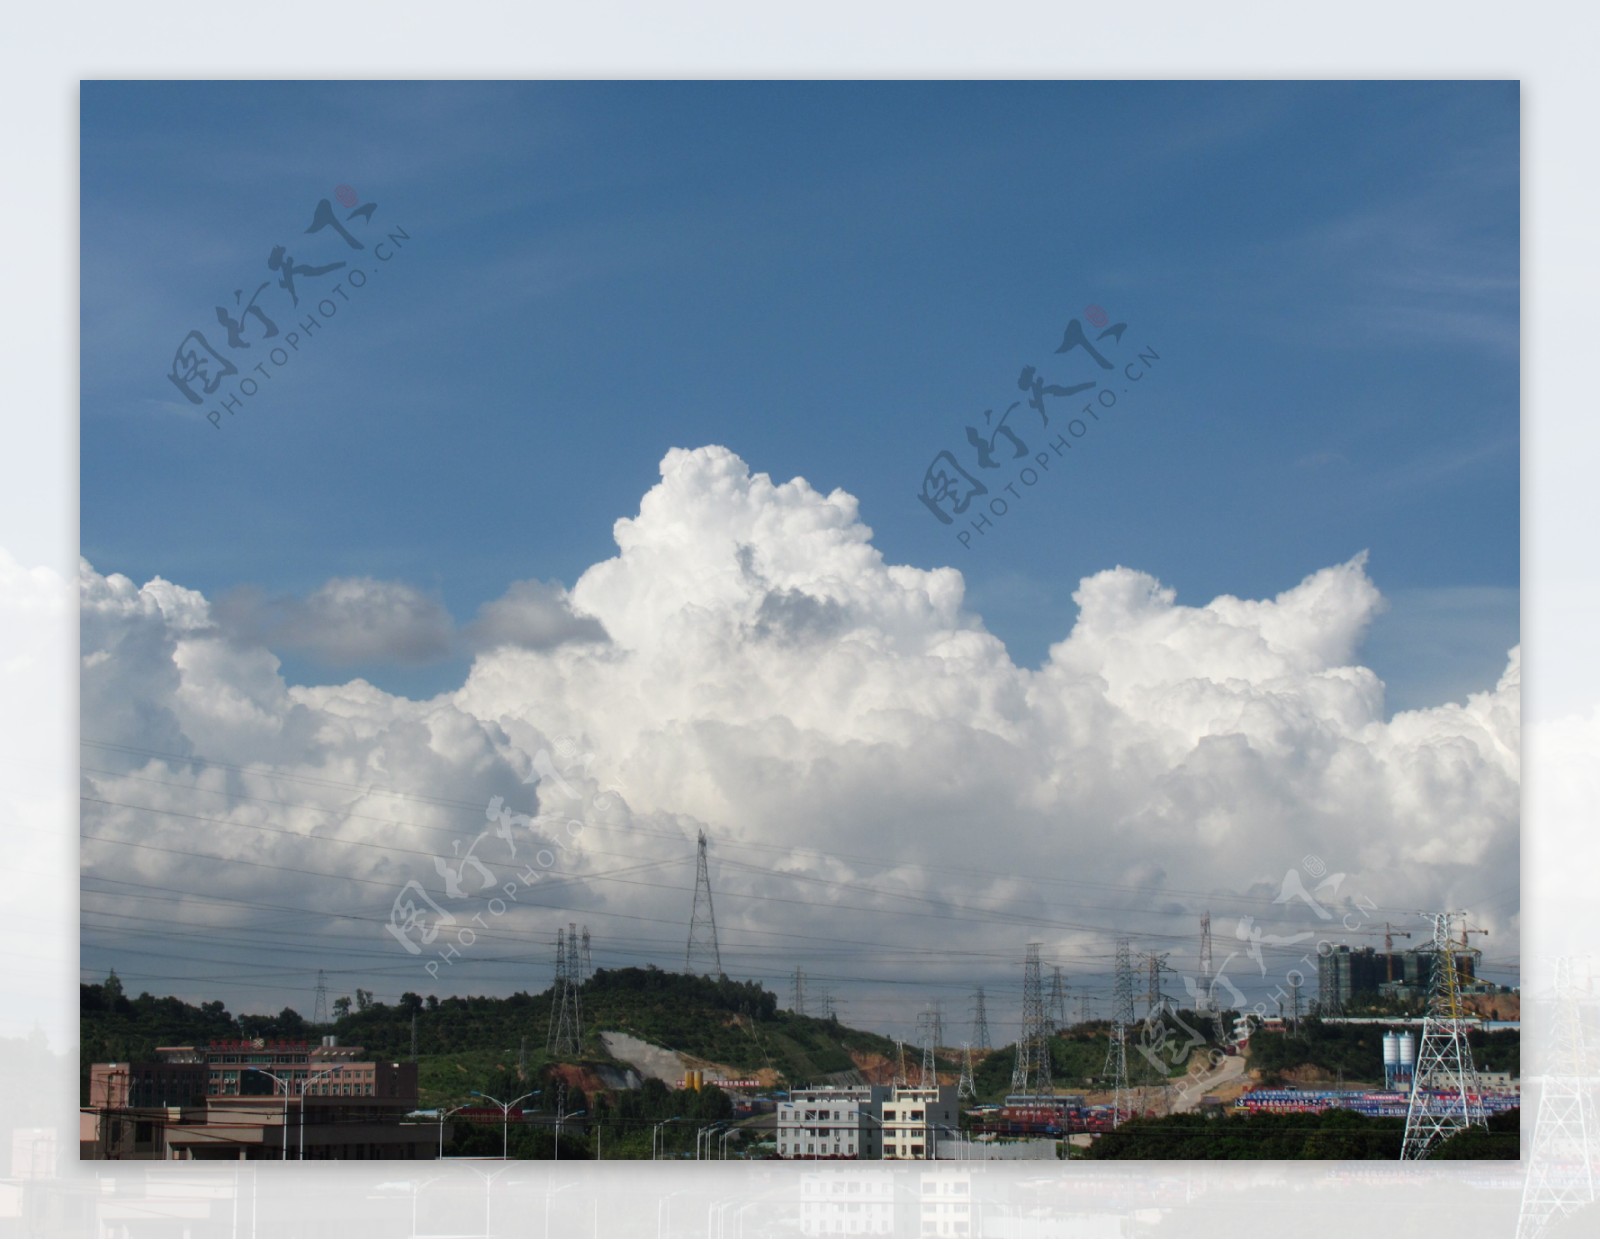 天空工业园白云图片